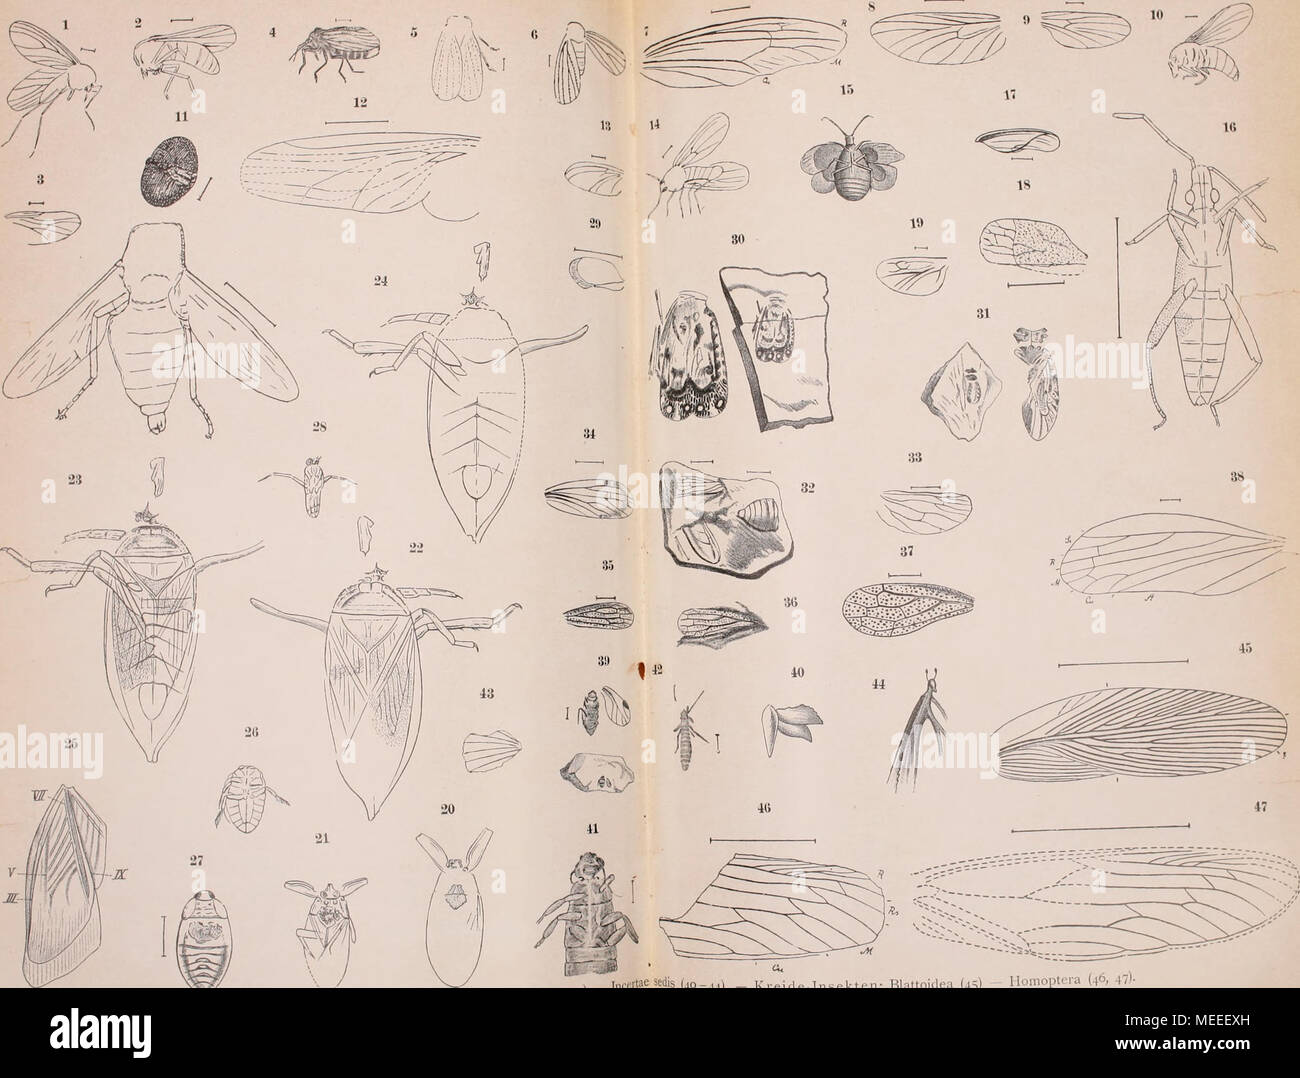 . Die fossilen insekten und die phylogenie der rezenten formen; ein handbuch für paläontologen und zoologen . Jura insekten: Diptera (1-14) - Hemiptem (15-29) - Honioptera (30 J L,,,,t;ieäedis (40-44).   Kreide Insekten: Blattoidea (45) -- Honioptera (46, 47)- -I^^ Foto Stock